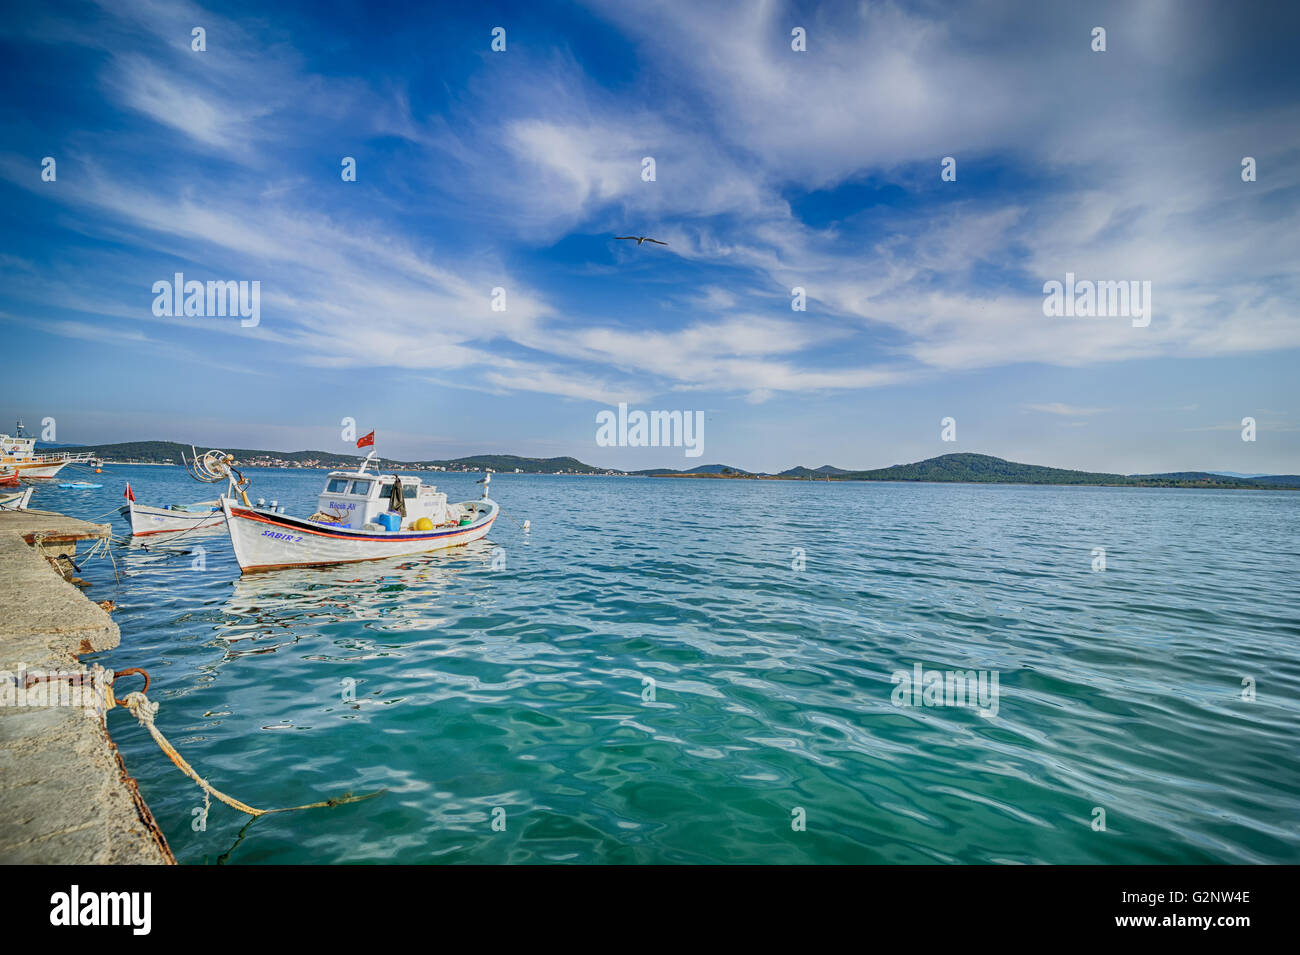 Bateaux de pêche dans l'île de Cunda Alibey Balikesir Turquie. L'île de Cunda Alibey, également appelé Island est la plus grande de l'Ayvalik Banque D'Images